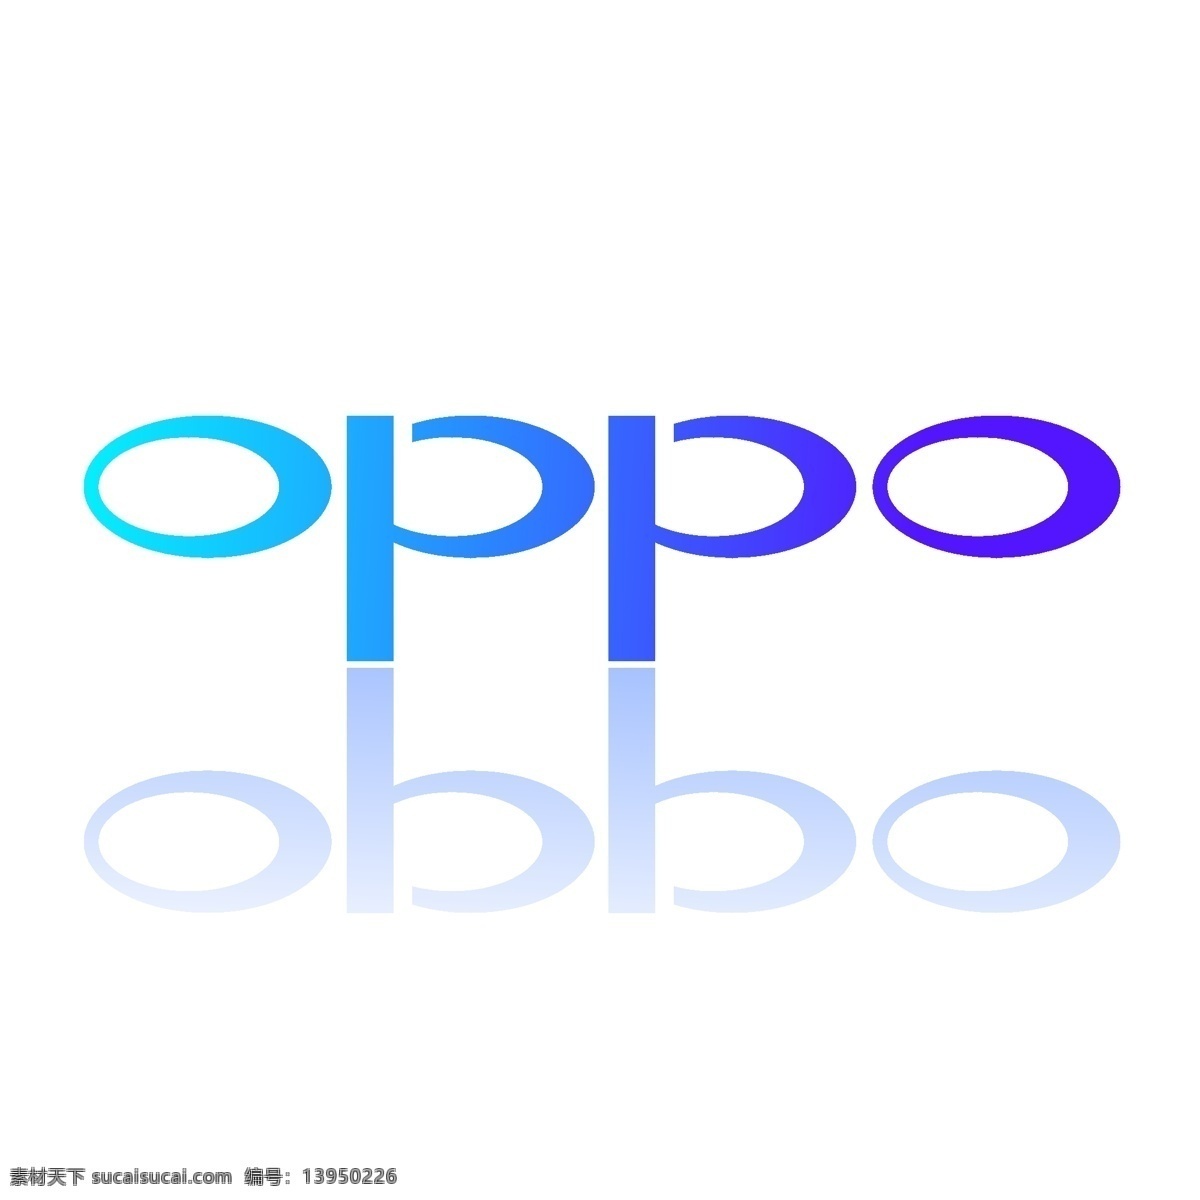 中国 手机 行业 品牌 oppo logo 技术创新 手机品牌 自拍美颜 拍照 渐变配色 至美 好用 实惠 大品牌